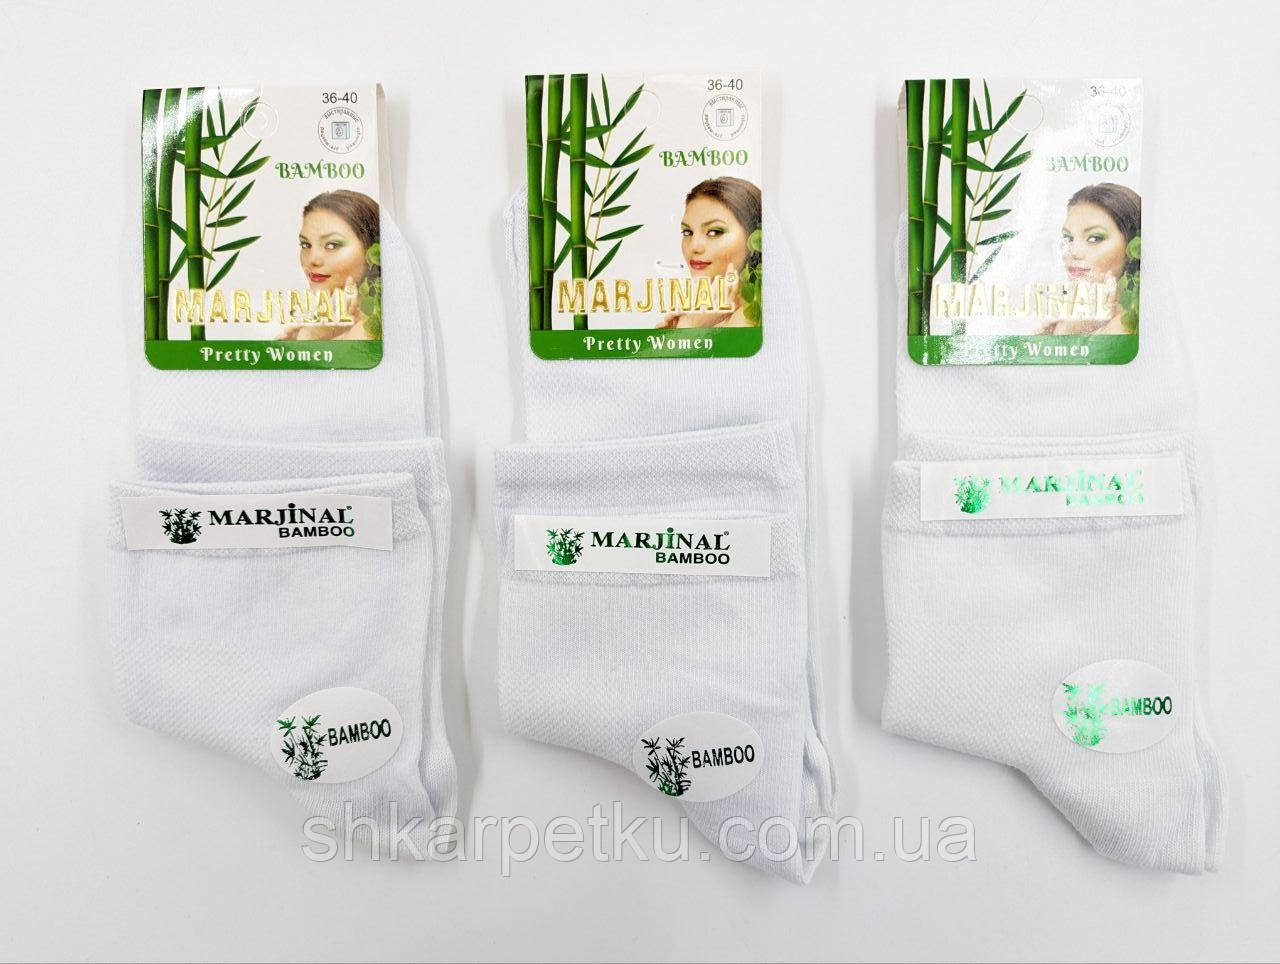 Жіночі середні шкарпетки Marjinal бамбук СІТКА, 36-40, 12 пар/уп, білі